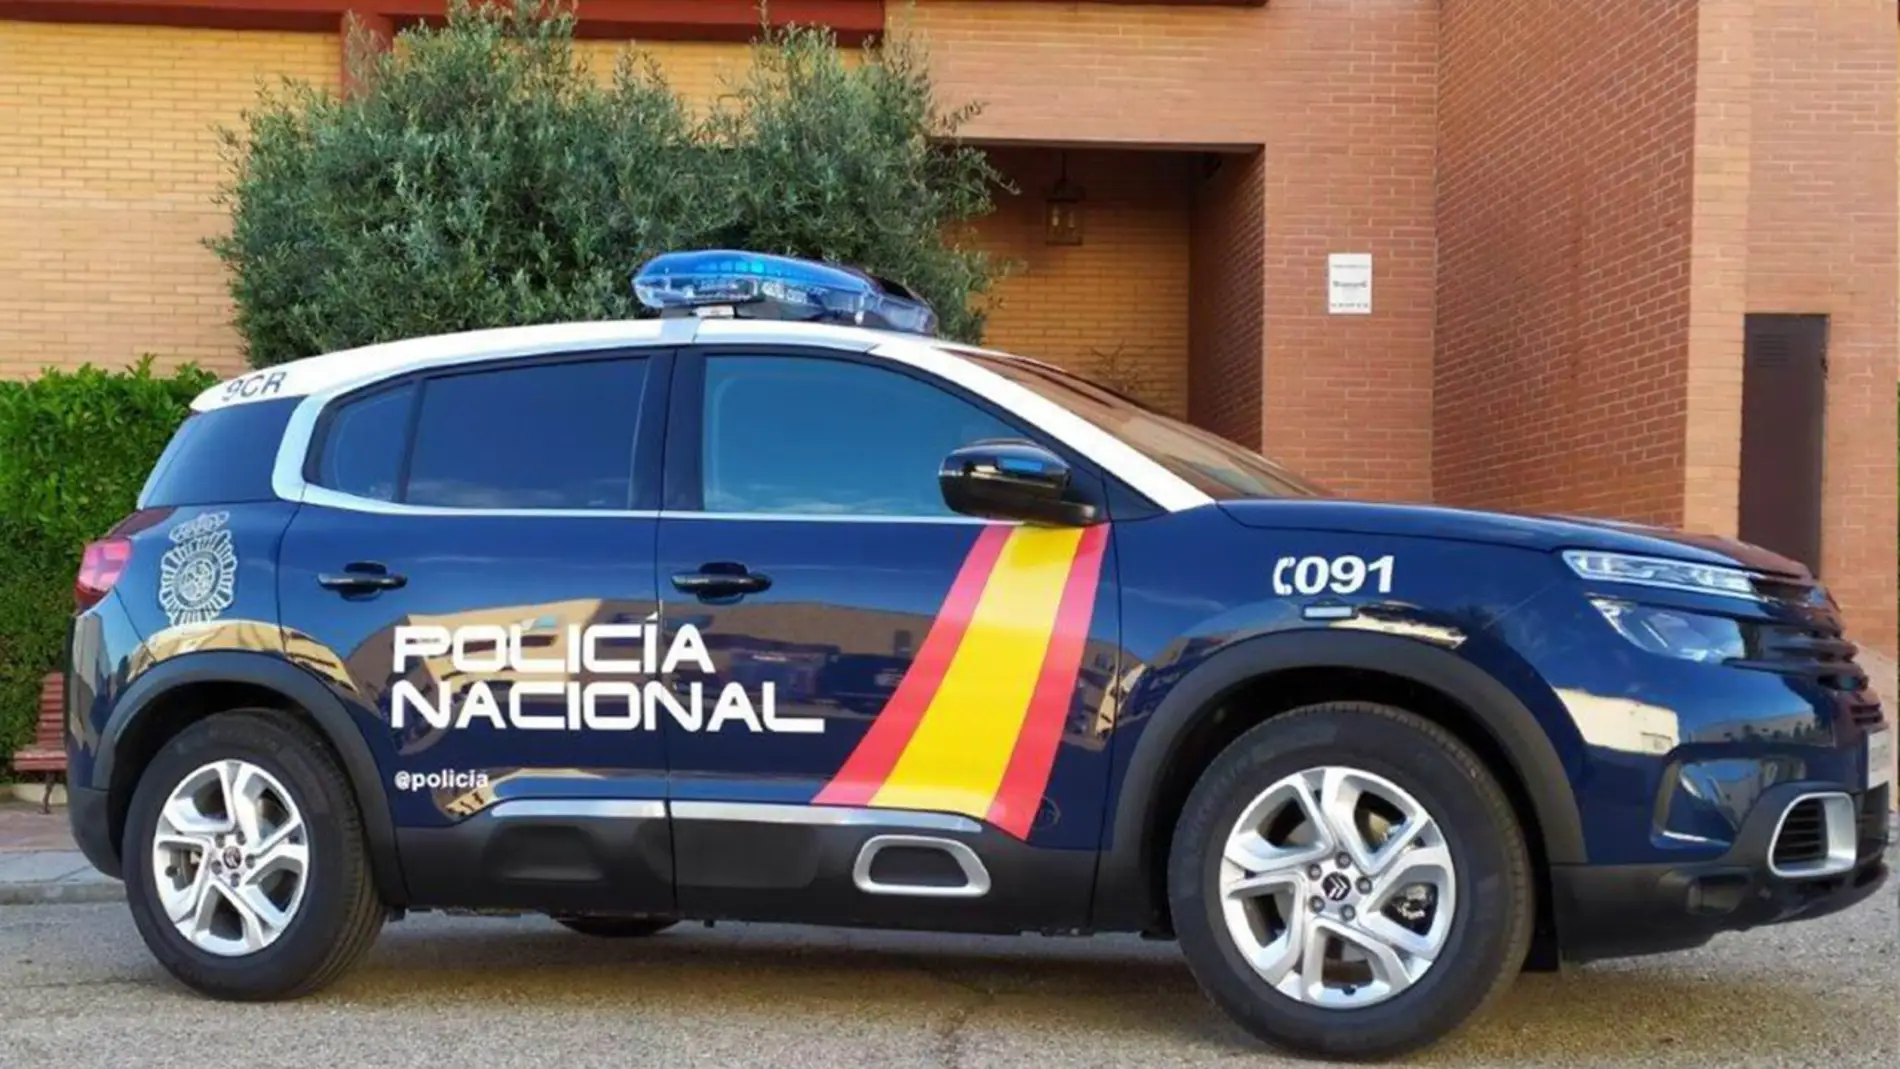 La Policía Nacional estrena más de 1.500 coches del Grupo PSA